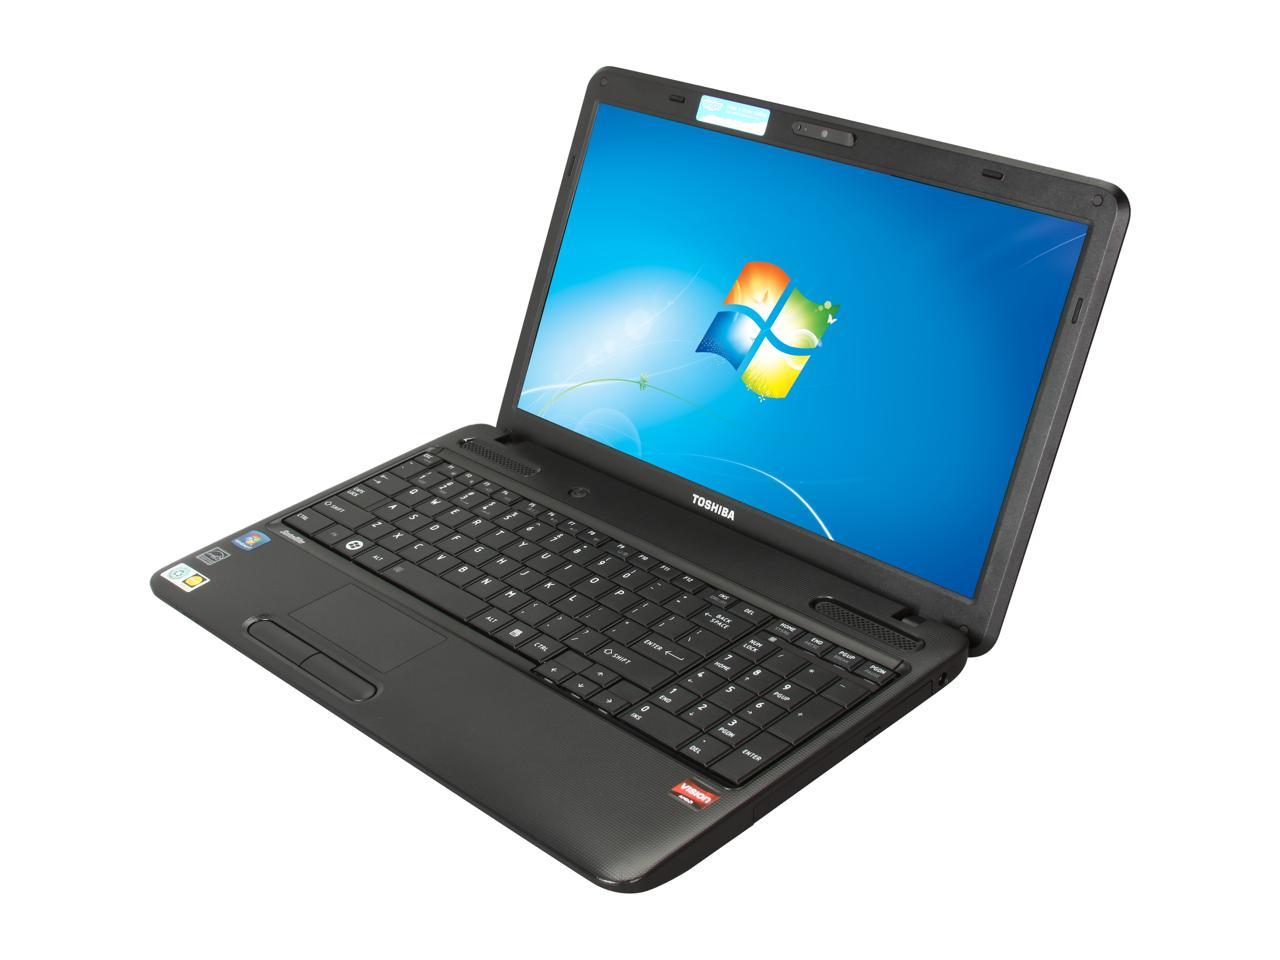 C650D L670 C660D C655 C655D vhbw CPU/GPU Lüfter mit 3-Pin-Stecker passend für Toshiba Satellite C650 C660 L670D Notebook Laptop